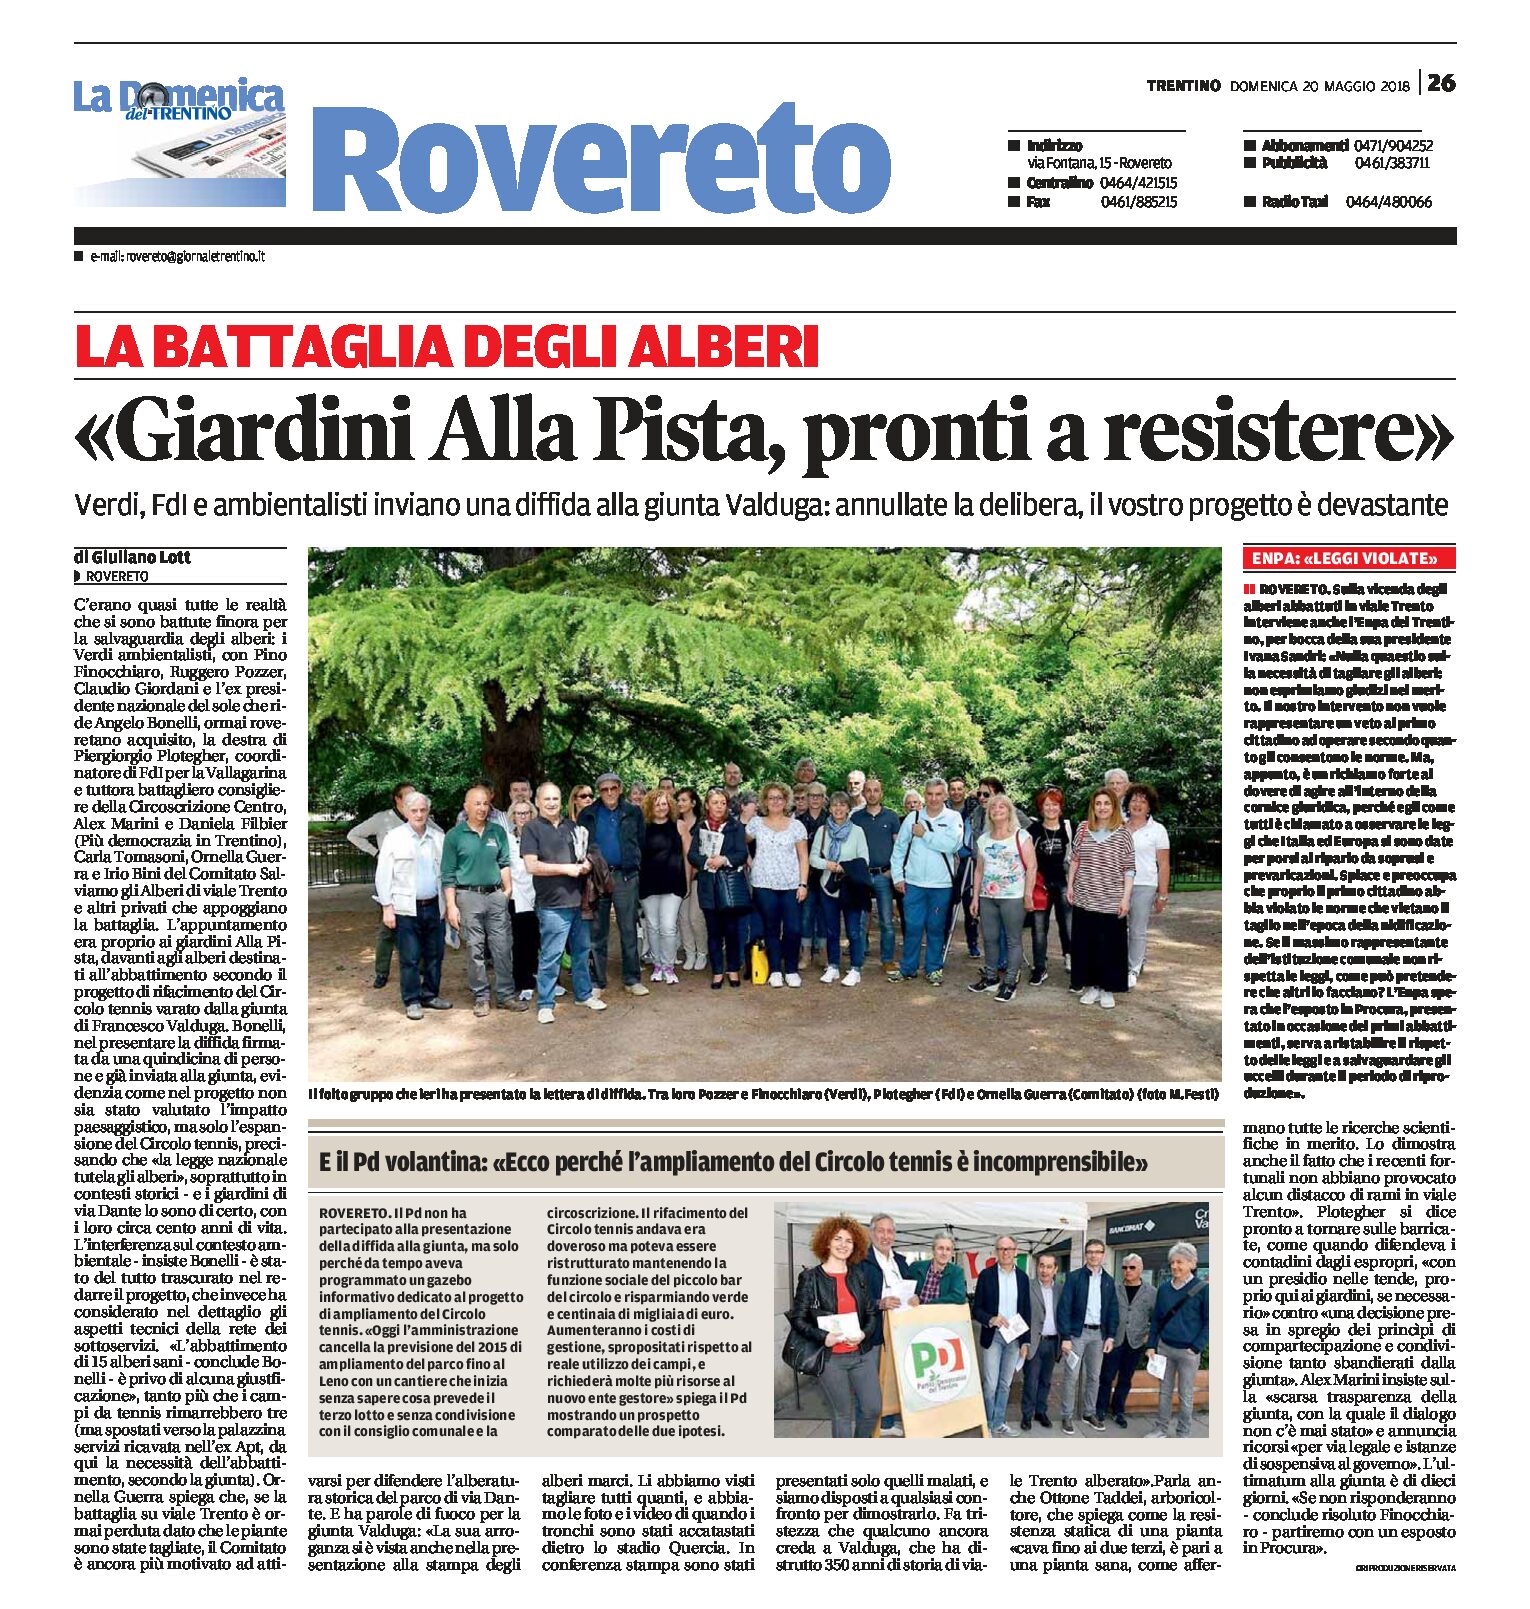 Rovereto, Giardini Alla Pista: Verdi, Fdi e ambientalisti pronti a resistere. Progetto devastante